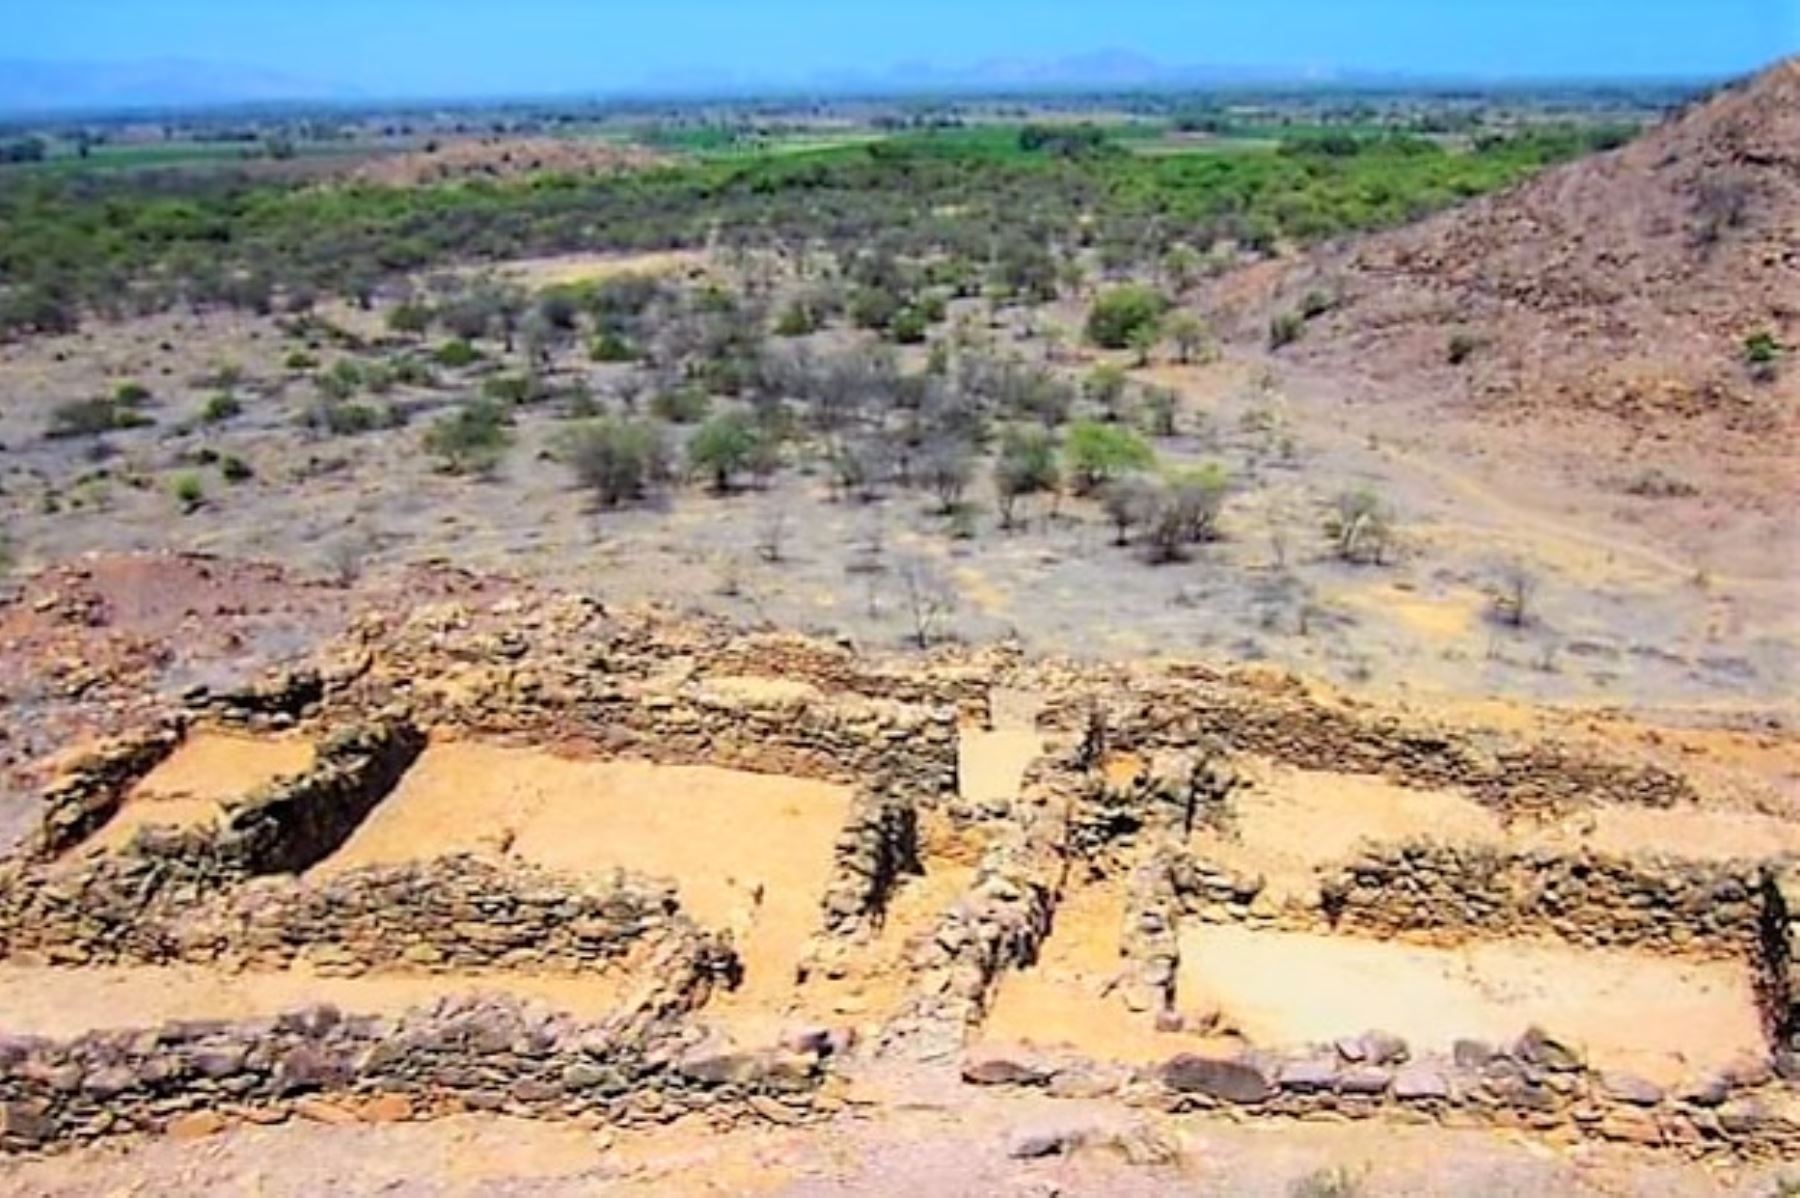 El sitio arqueológico de Jotoro forma parte del legado Chimú en la región Lambayeque. ANDINA/Difusión